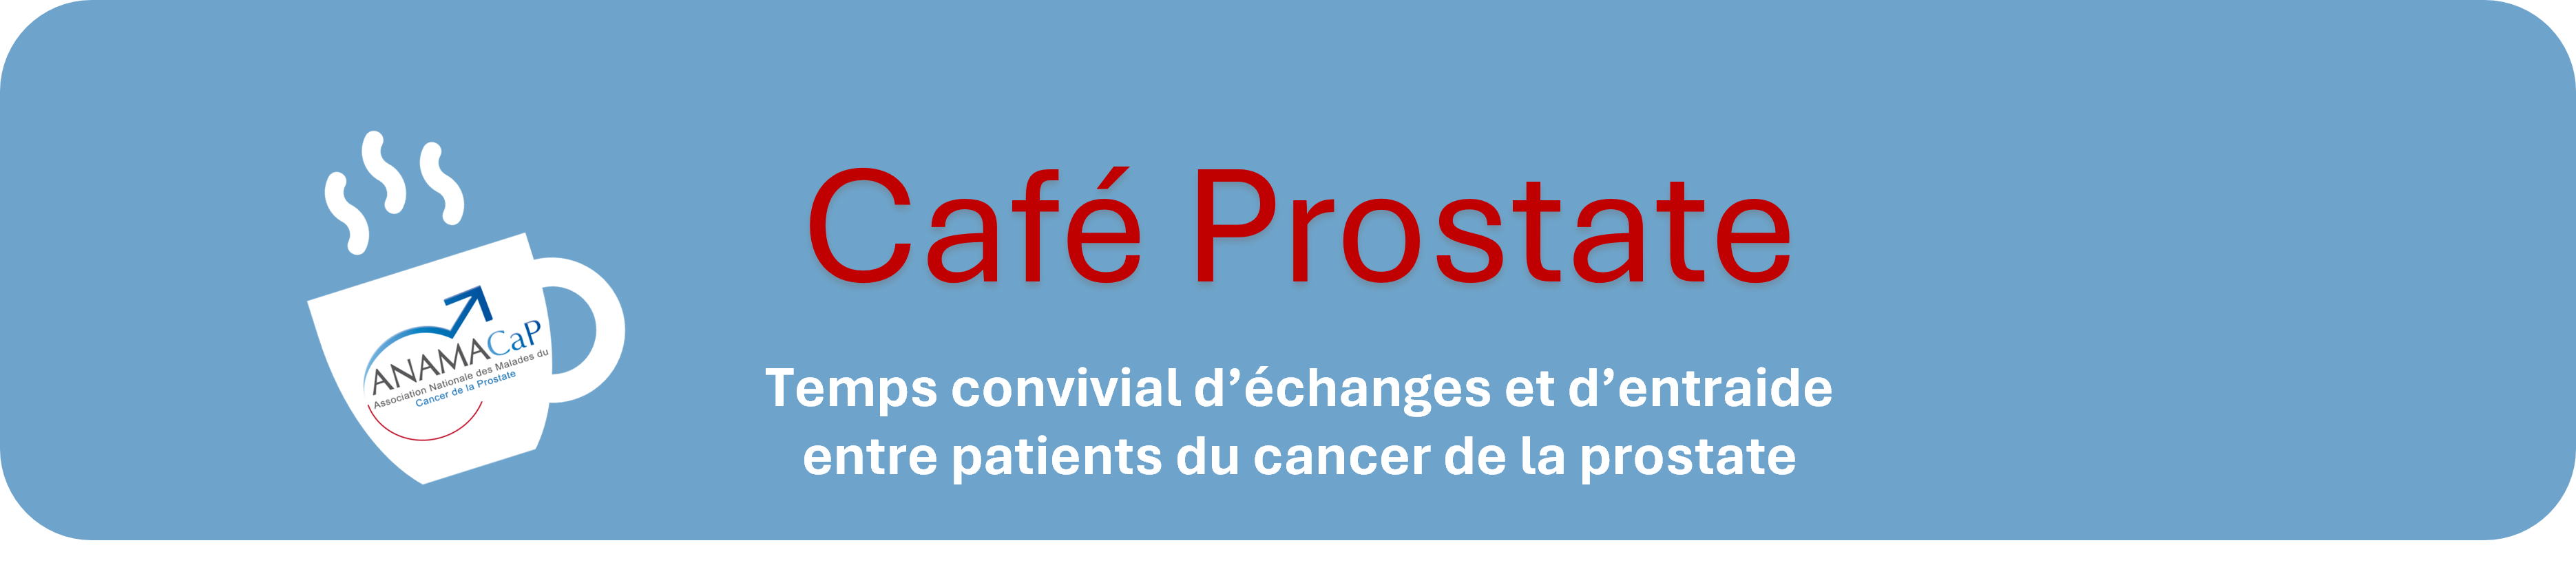 Café Prostate : Temps convivial d’échanges et d’entraide entre patients du cancer de la prostate